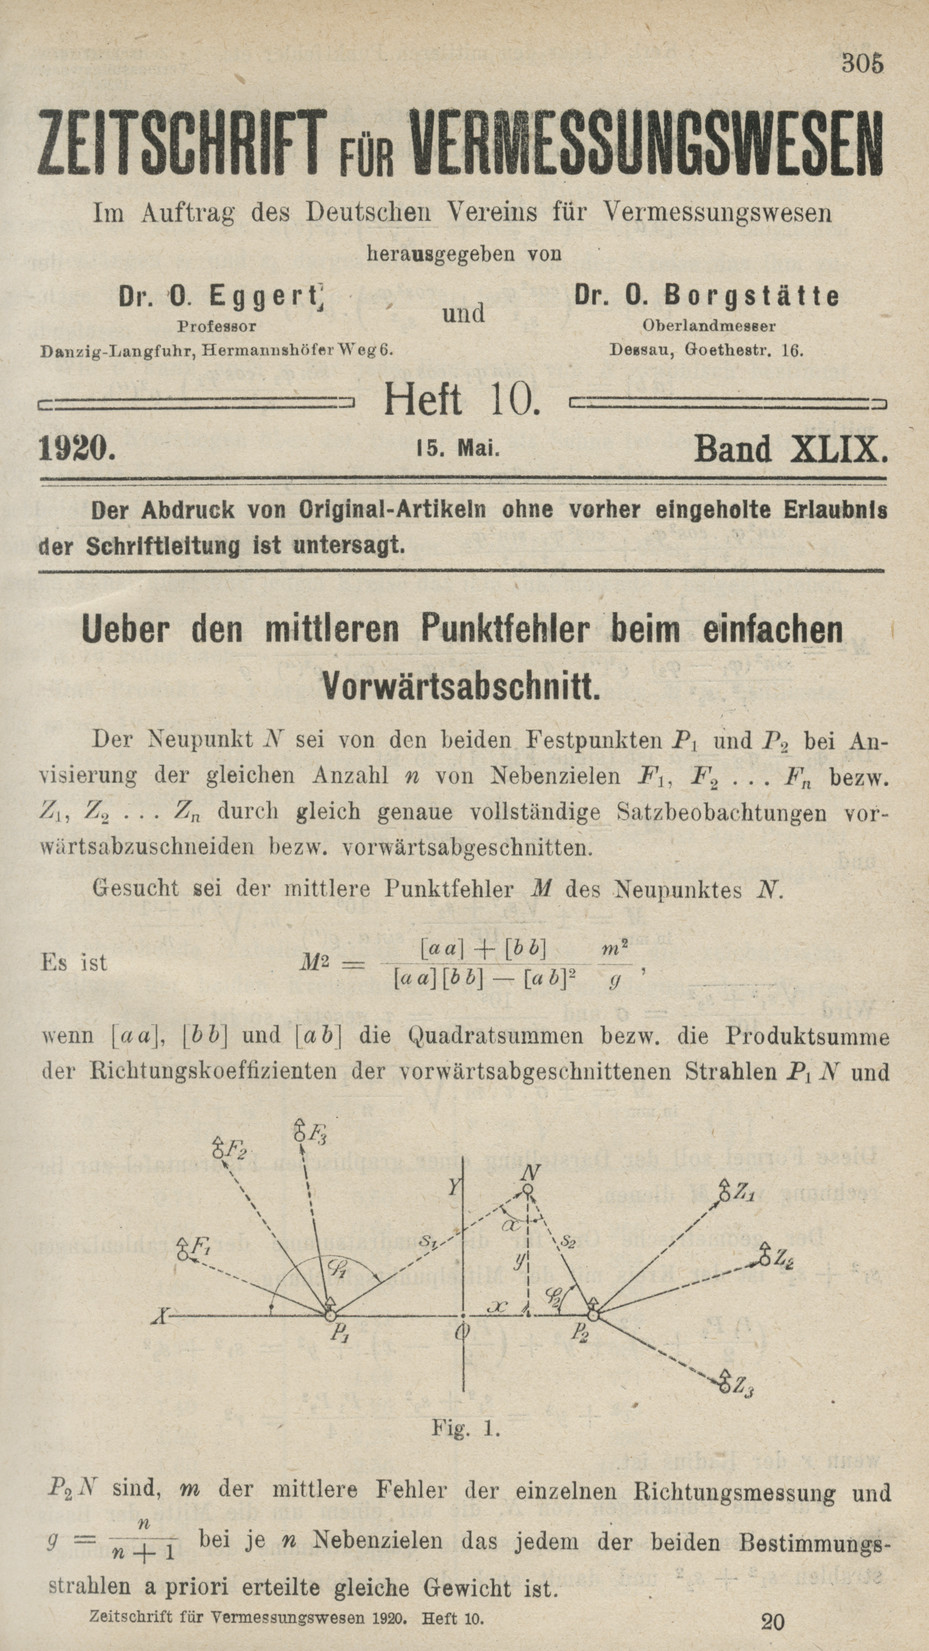 Zeitschrift für Vermessungswesen, Heft 10, Band XLIX